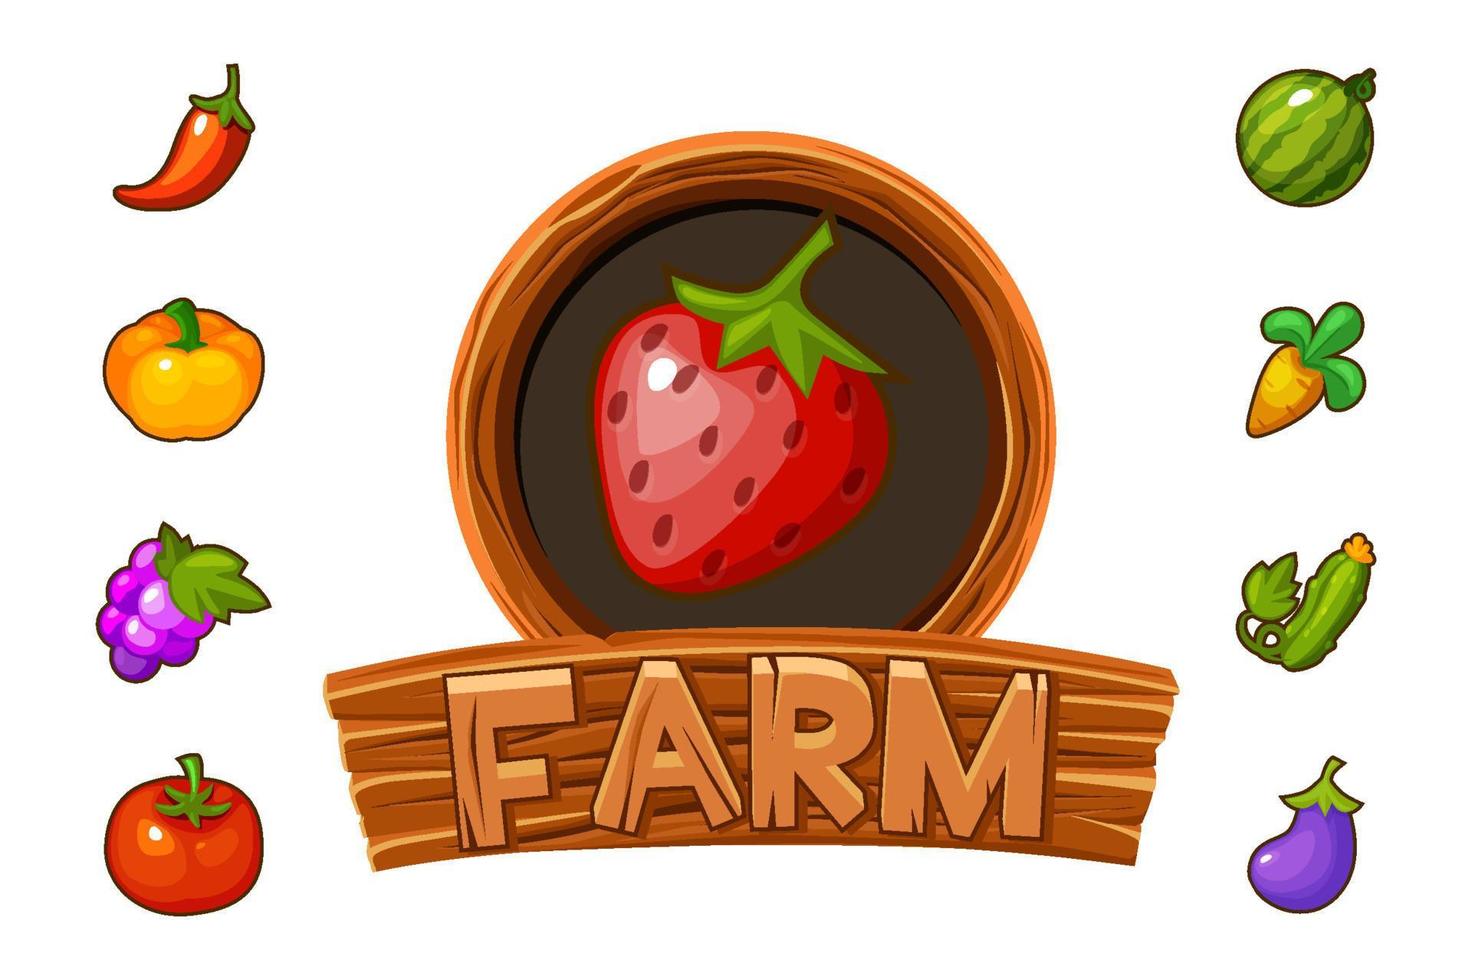 ferme de logo en bois avec des fraises pour l'interface graphique du jeu. illustration vectorielle de bannière avec fruits et légumes pour le jeu. vecteur